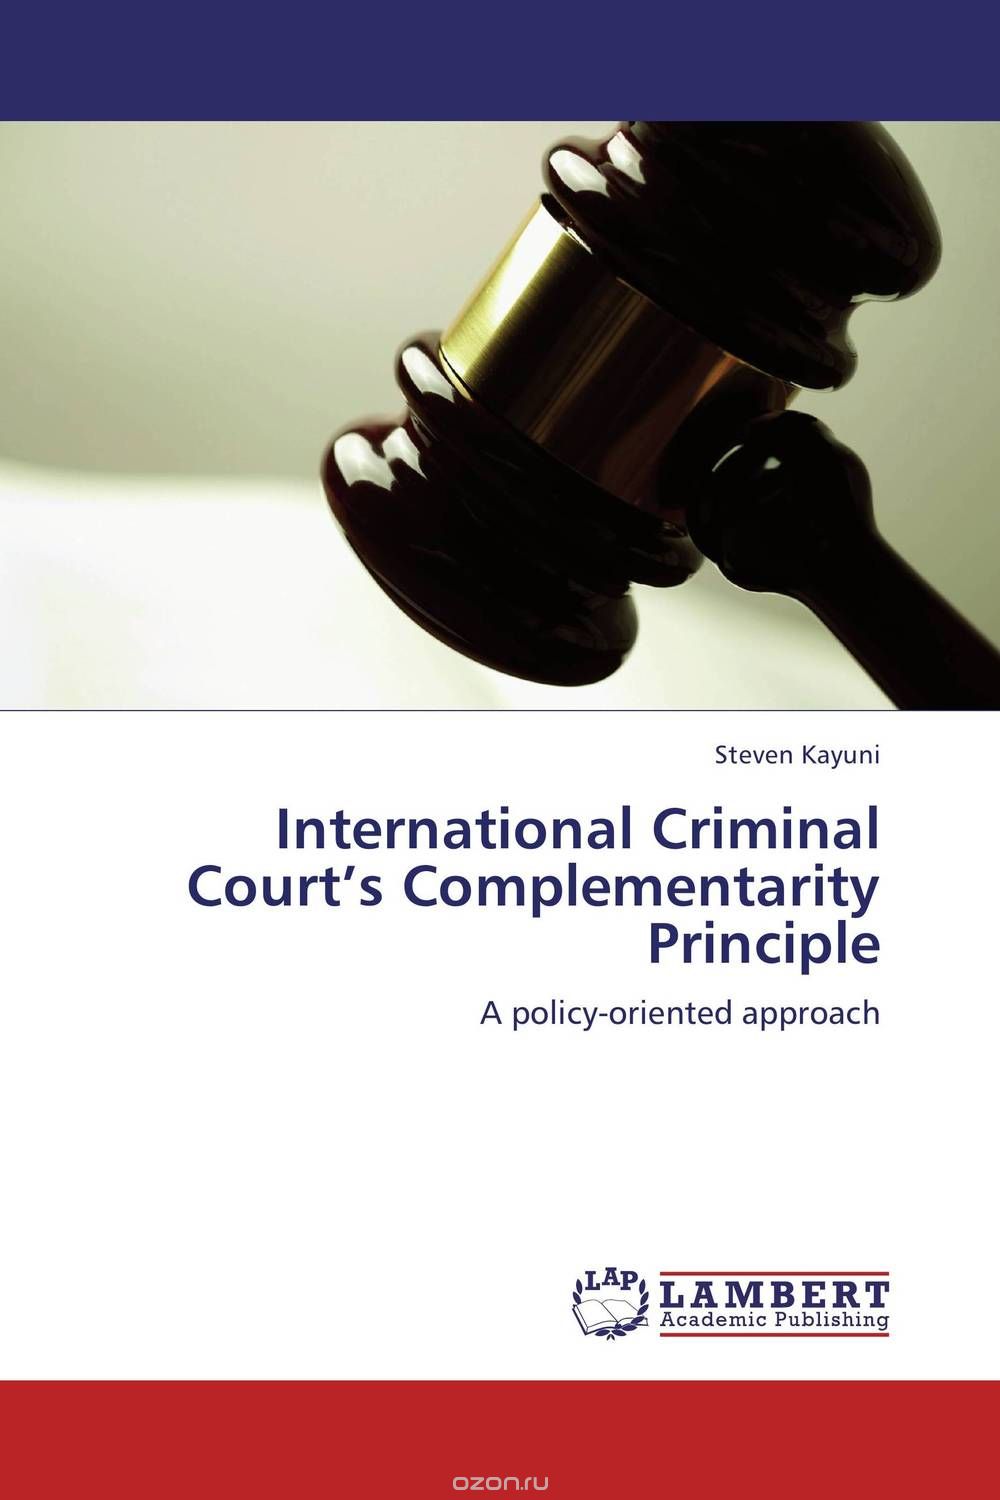 Скачать книгу "International Criminal Court’s Complementarity Principle"